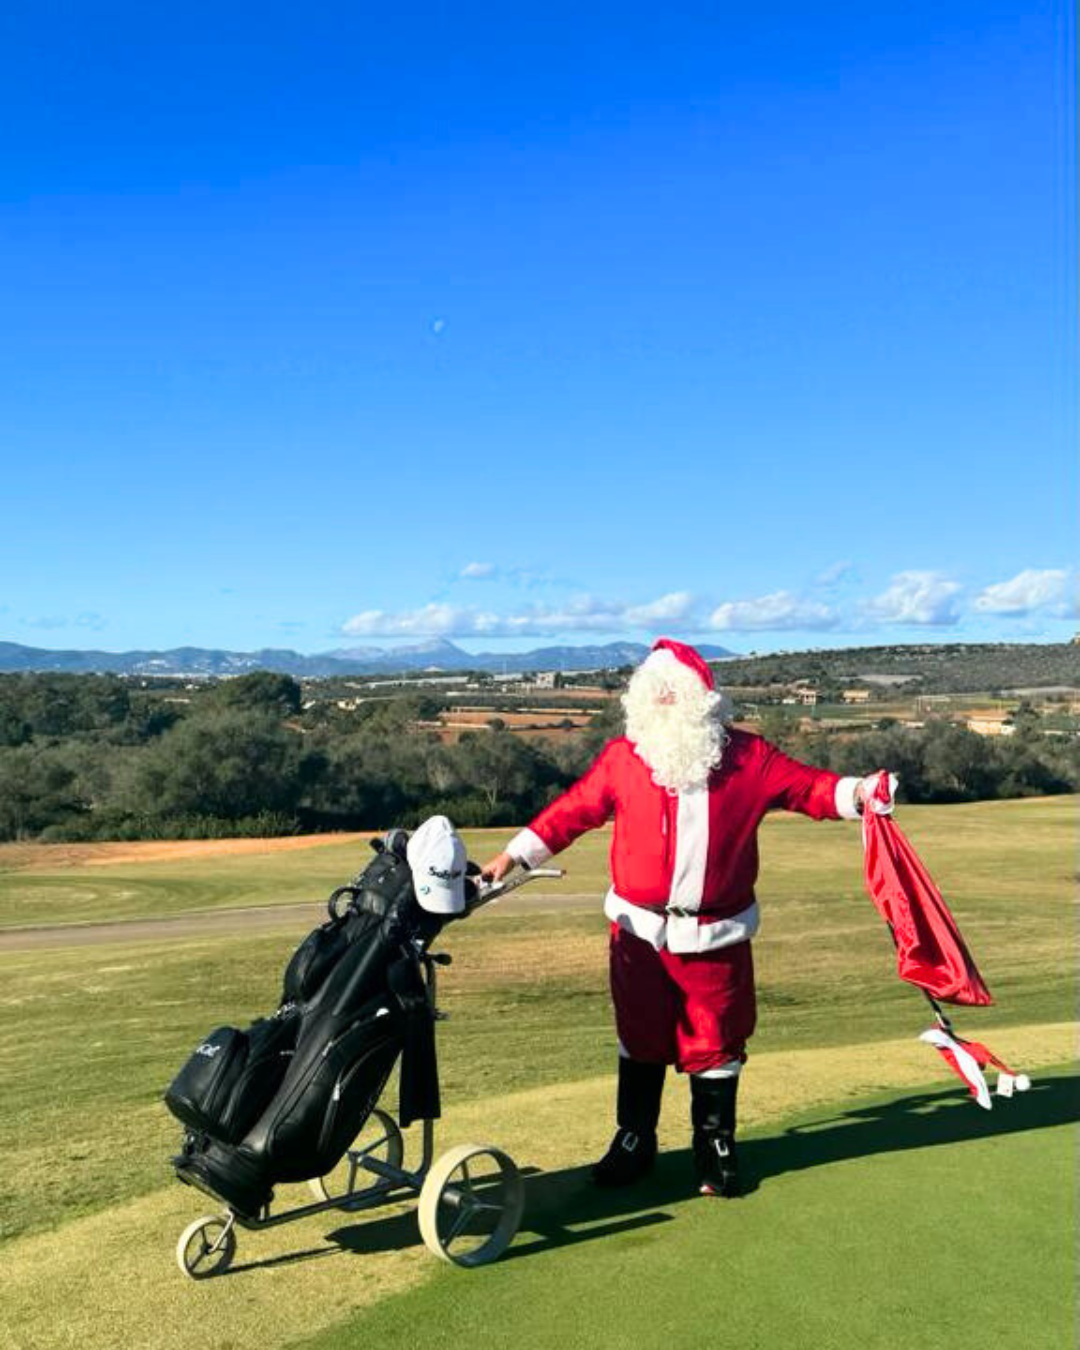 Parada especial en SOFT LINE Golf: ¡Papá Noel os desea felices fiestas!